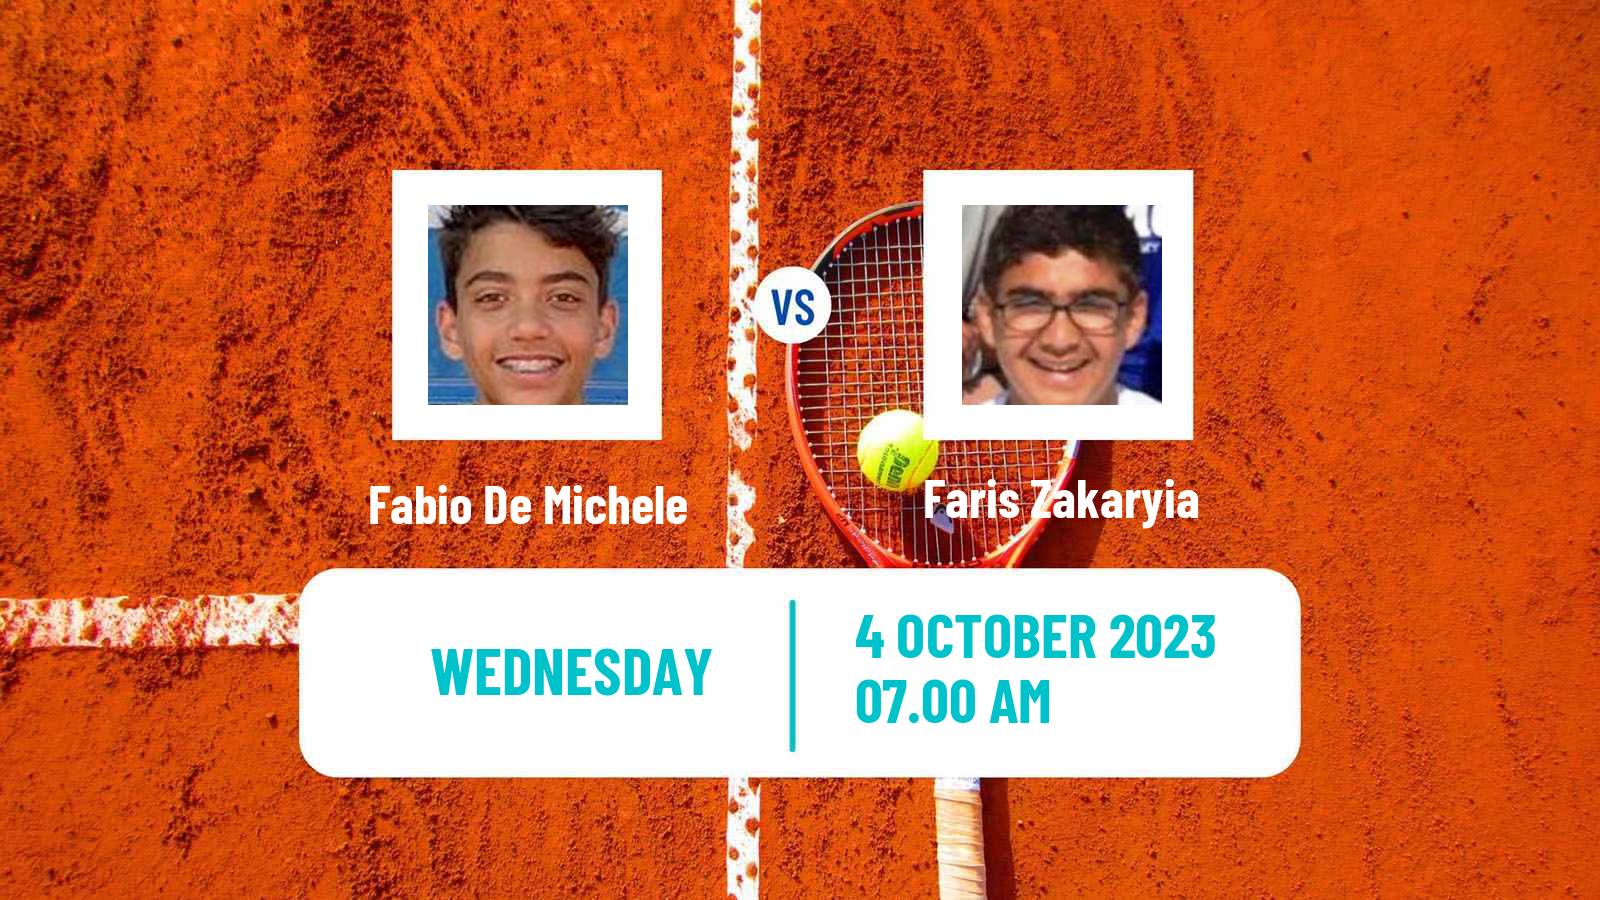 Tennis ITF M15 Sharm Elsheikh 22 Men Fabio De Michele - Faris Zakaryia